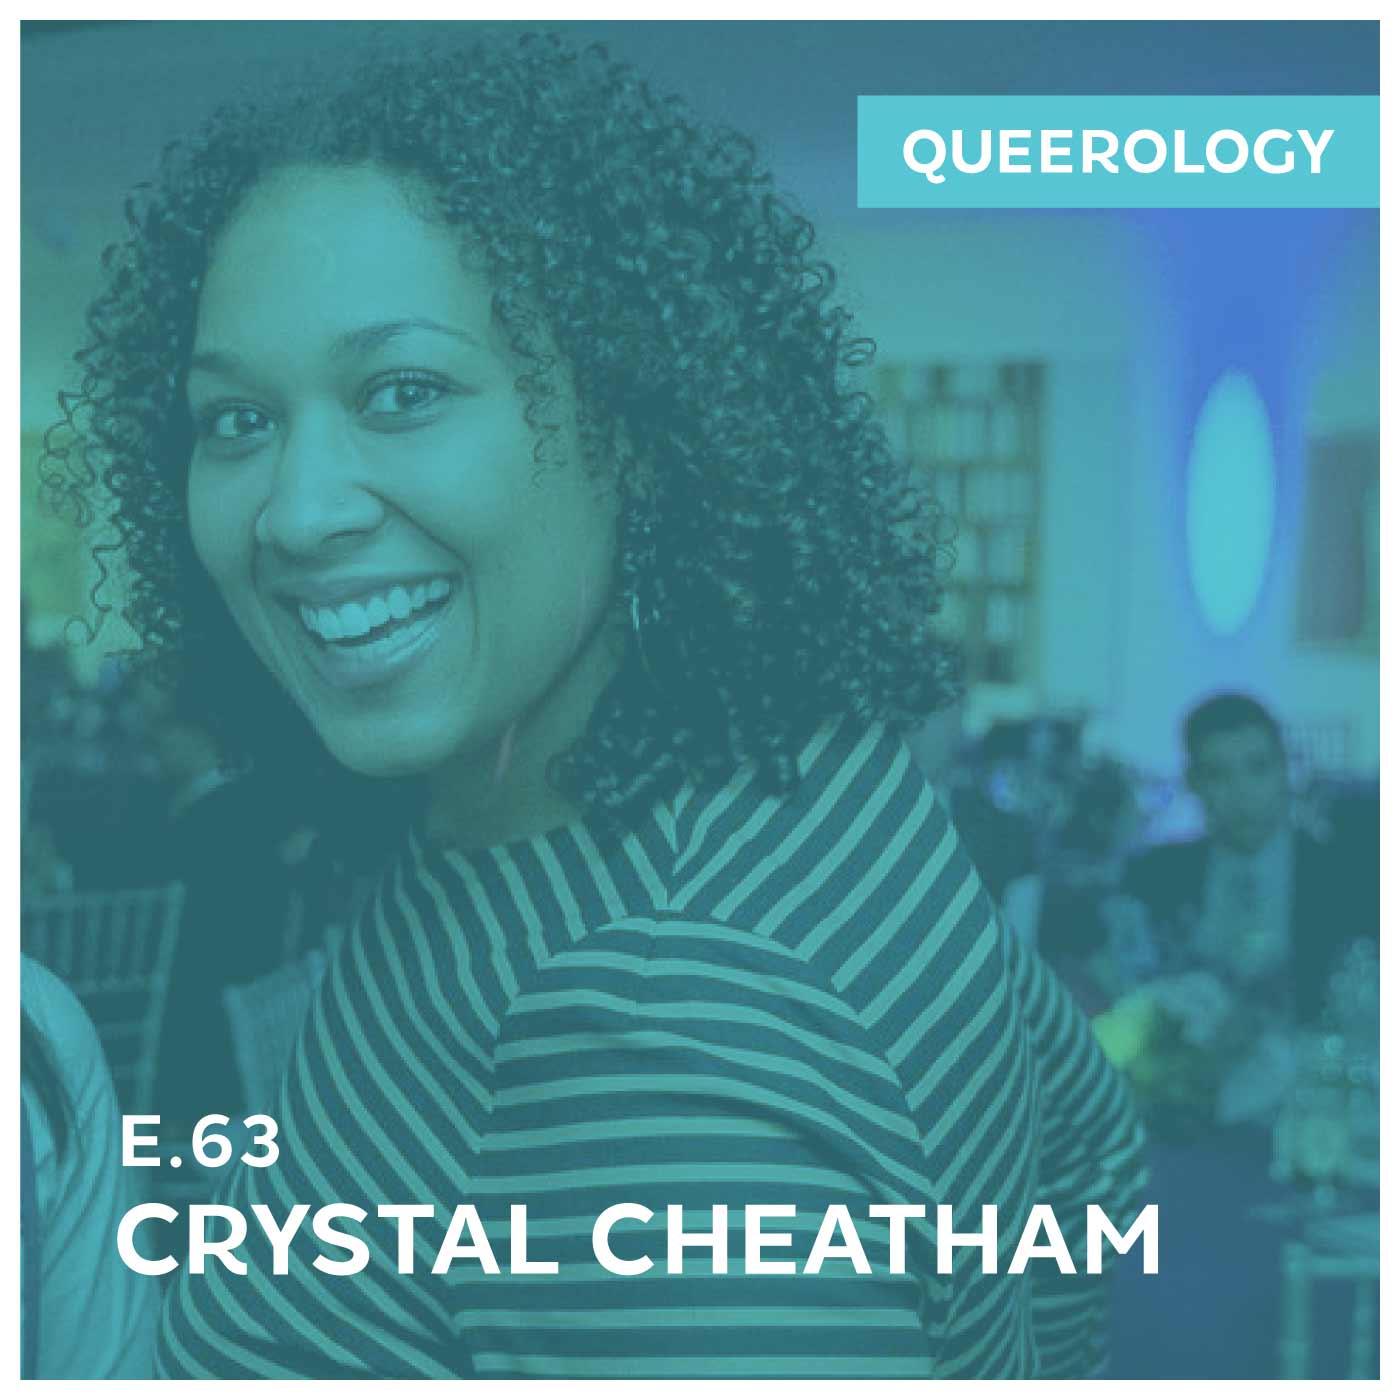 Crystal Cheatham Made an App - E63